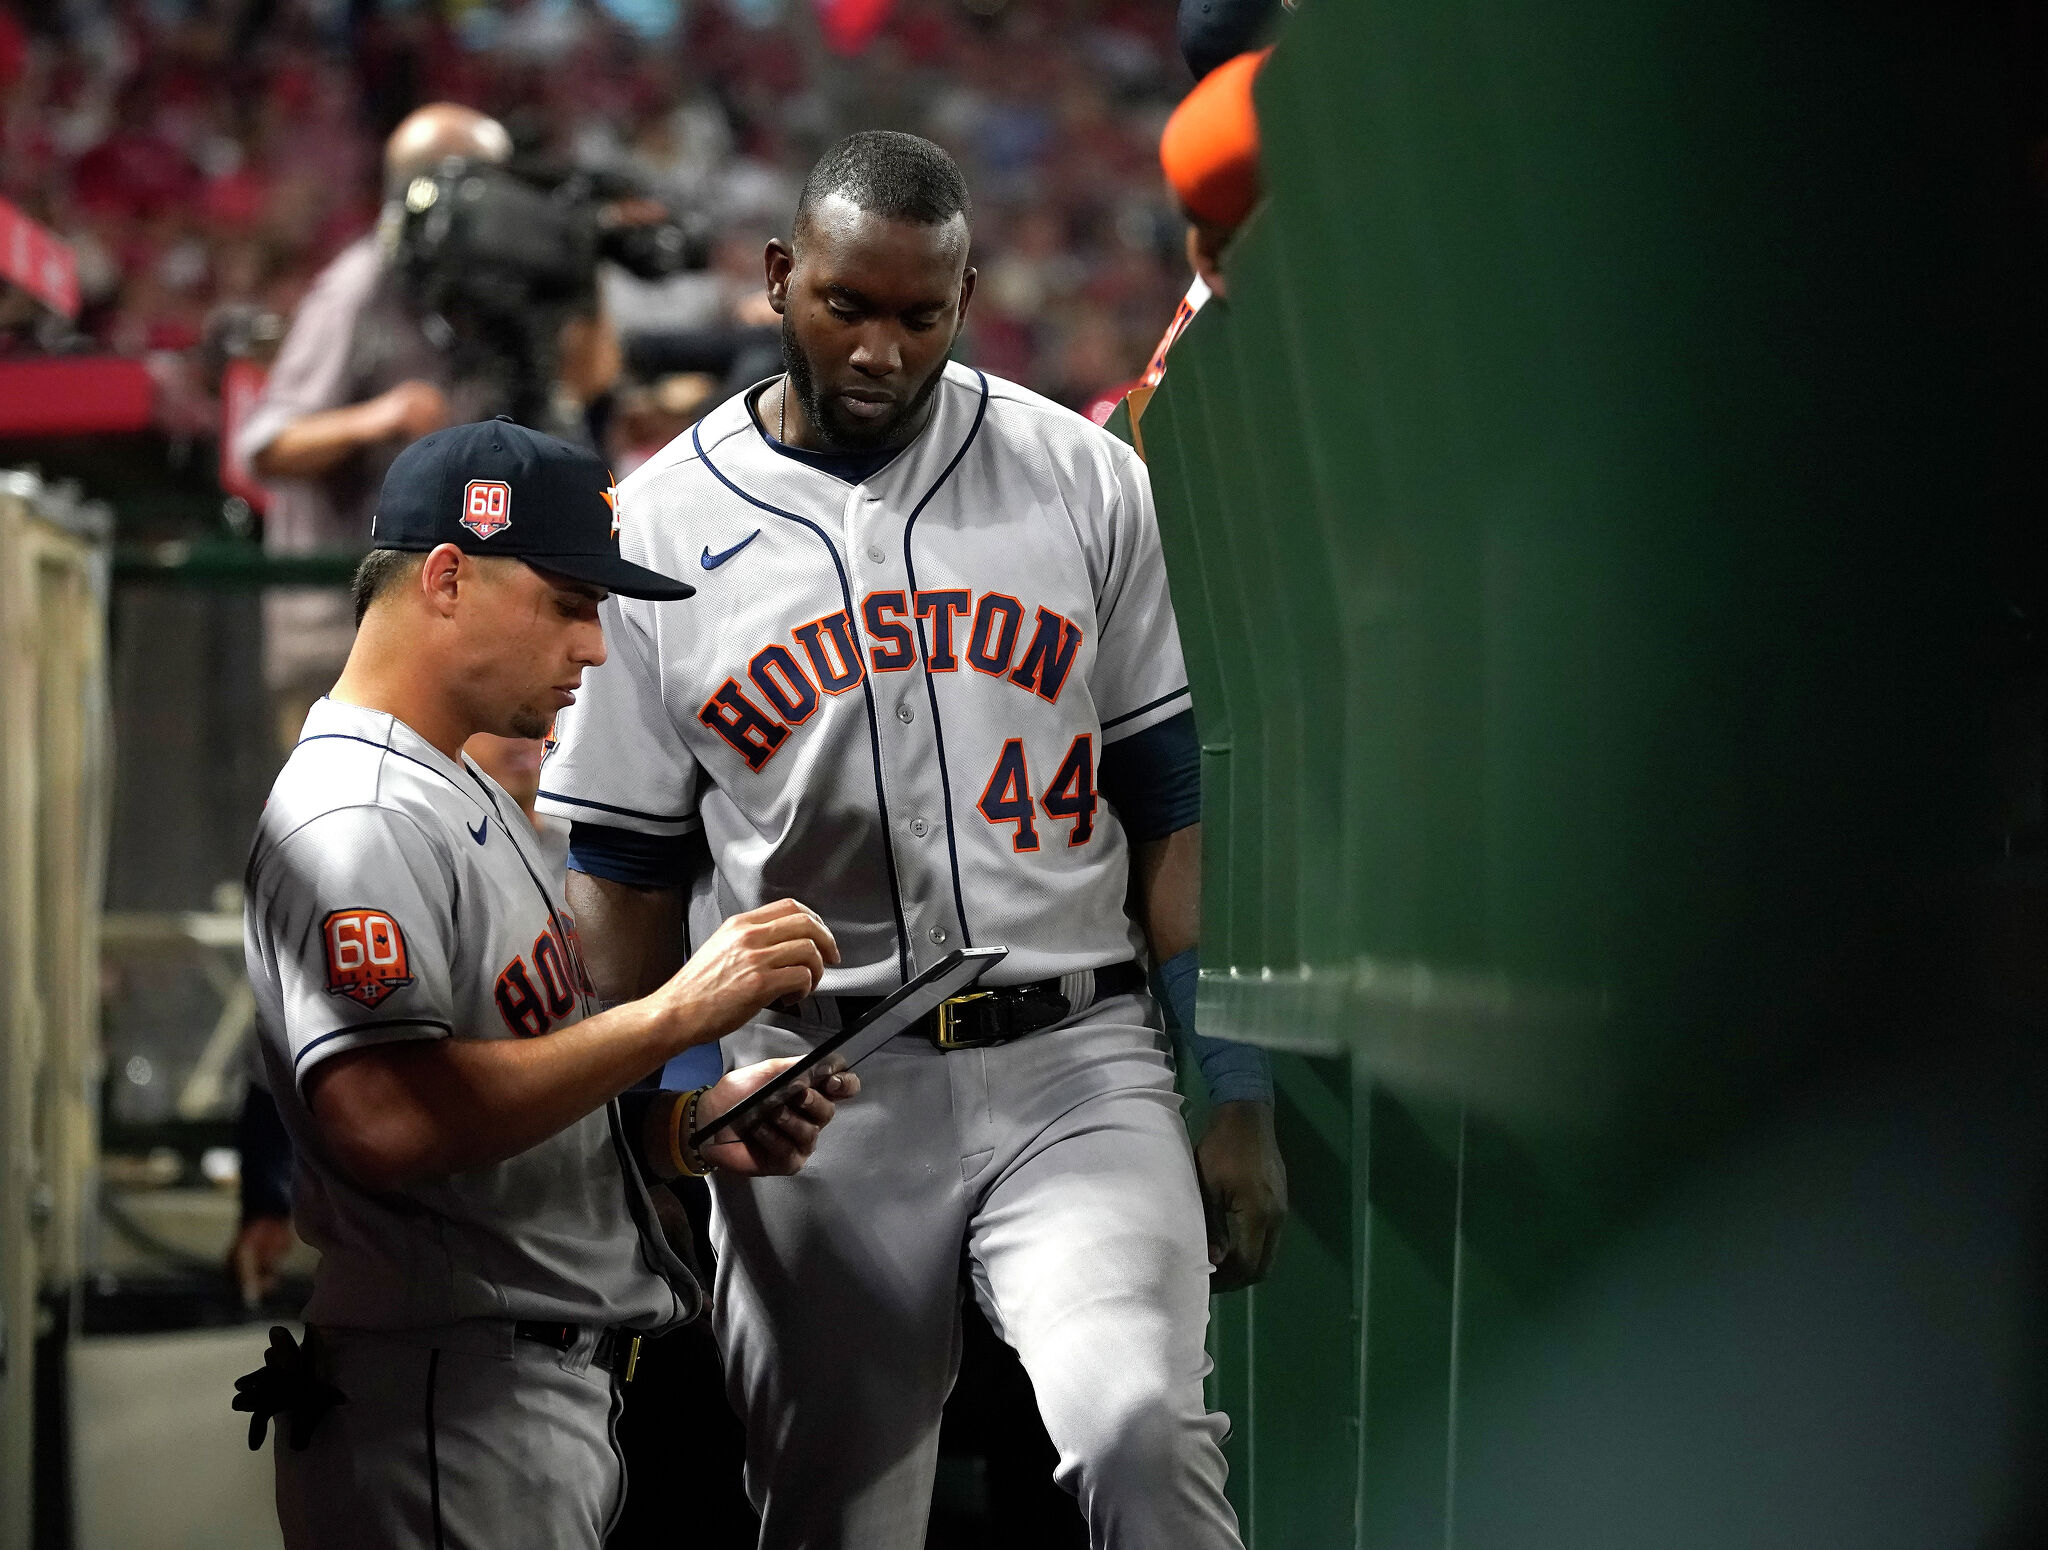 Houston Astros: Yordan Alvarez out again with illness